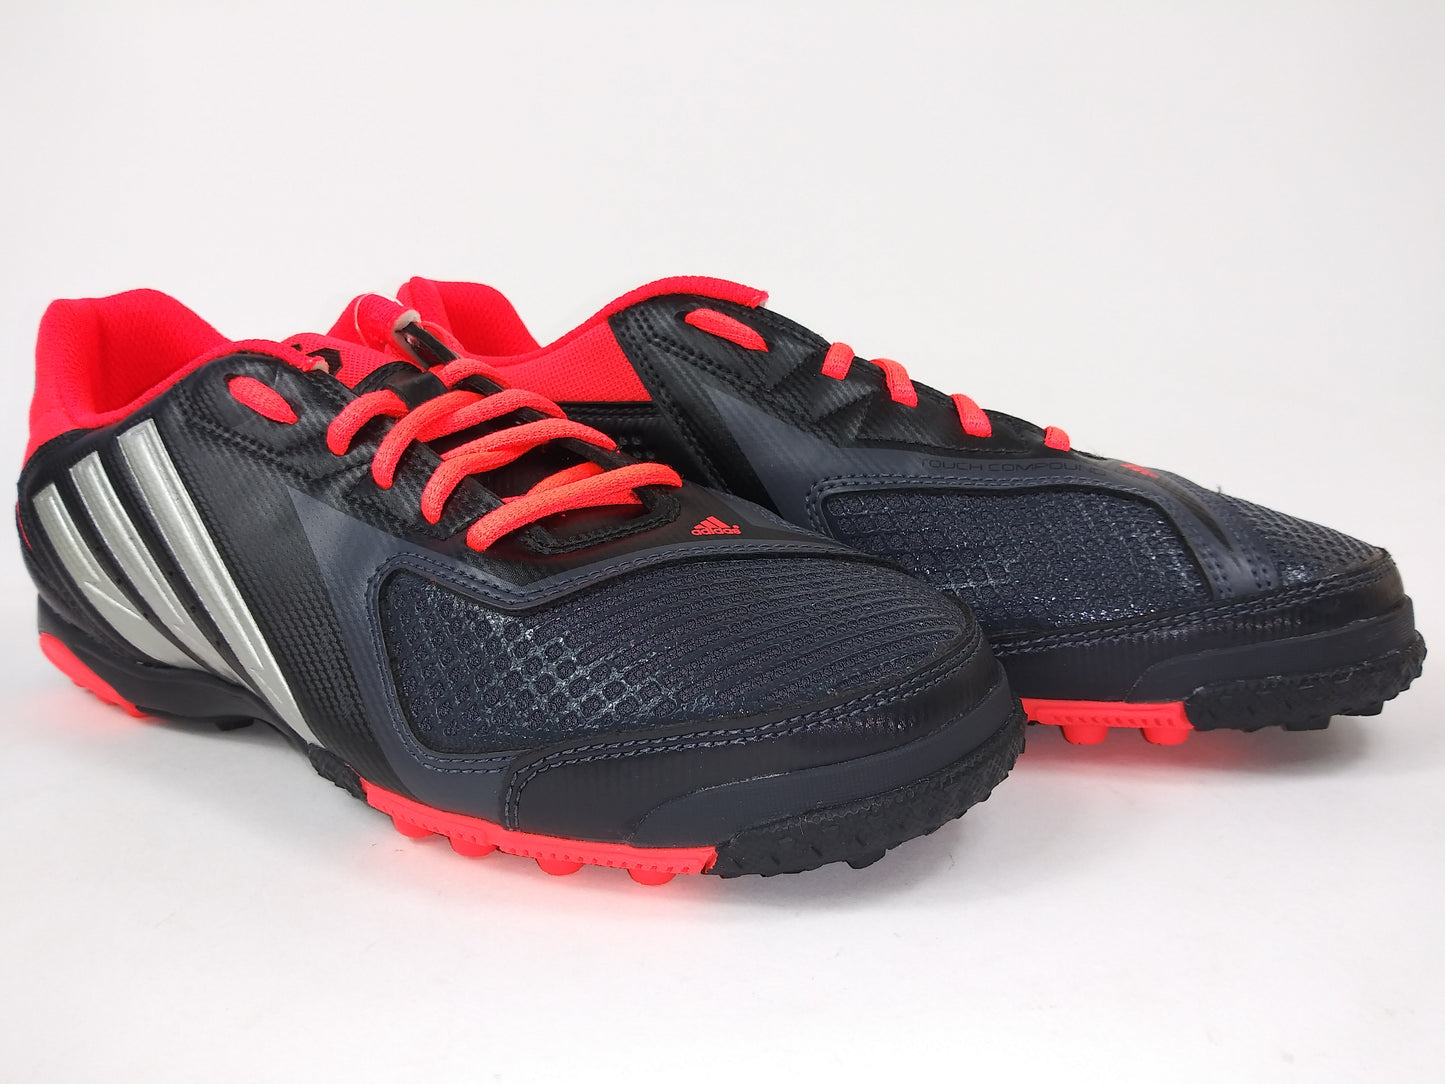 Adidas freefootbll x-ite  Black Red